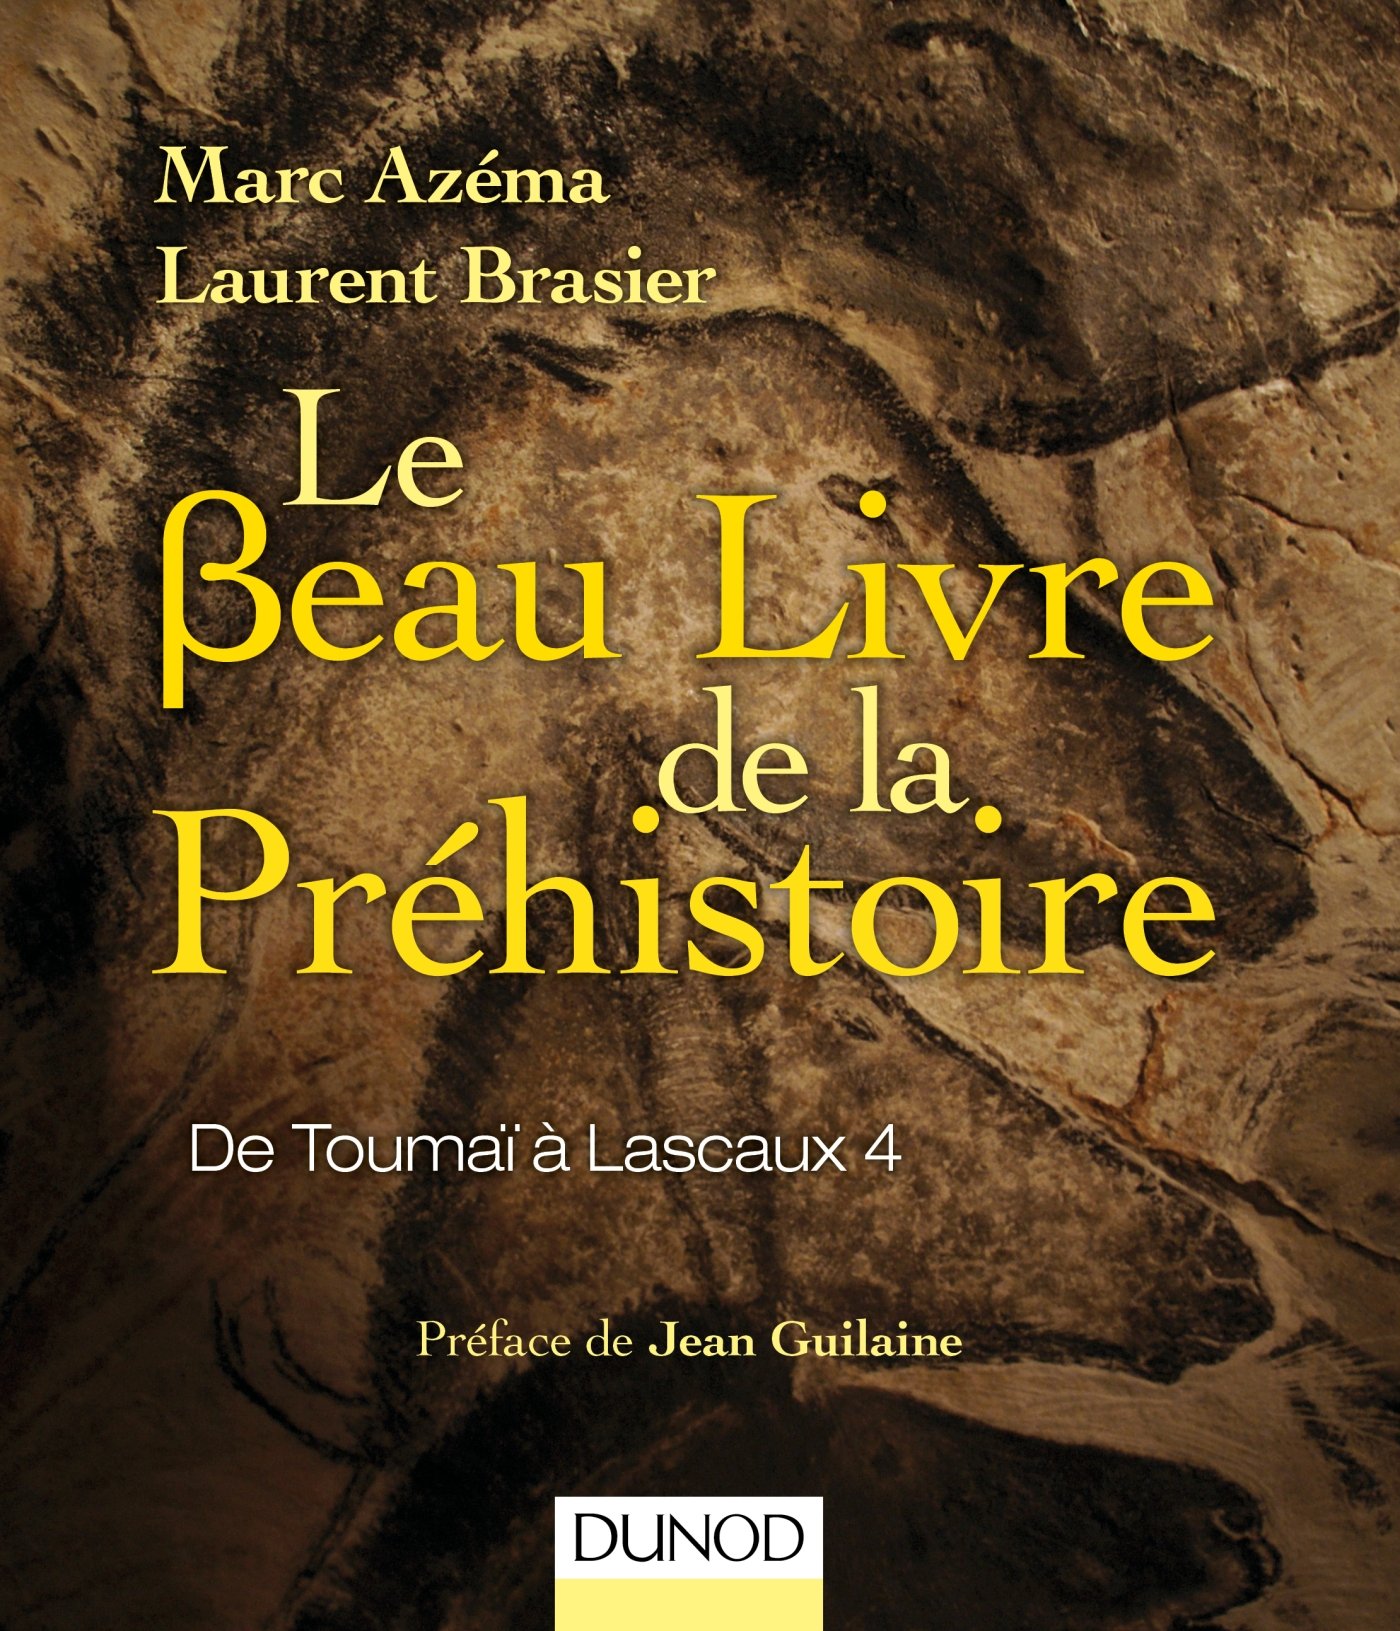 Le beau livre de la préhistoire. De Toumaï à Lascaux 4, 2016, 420 p.